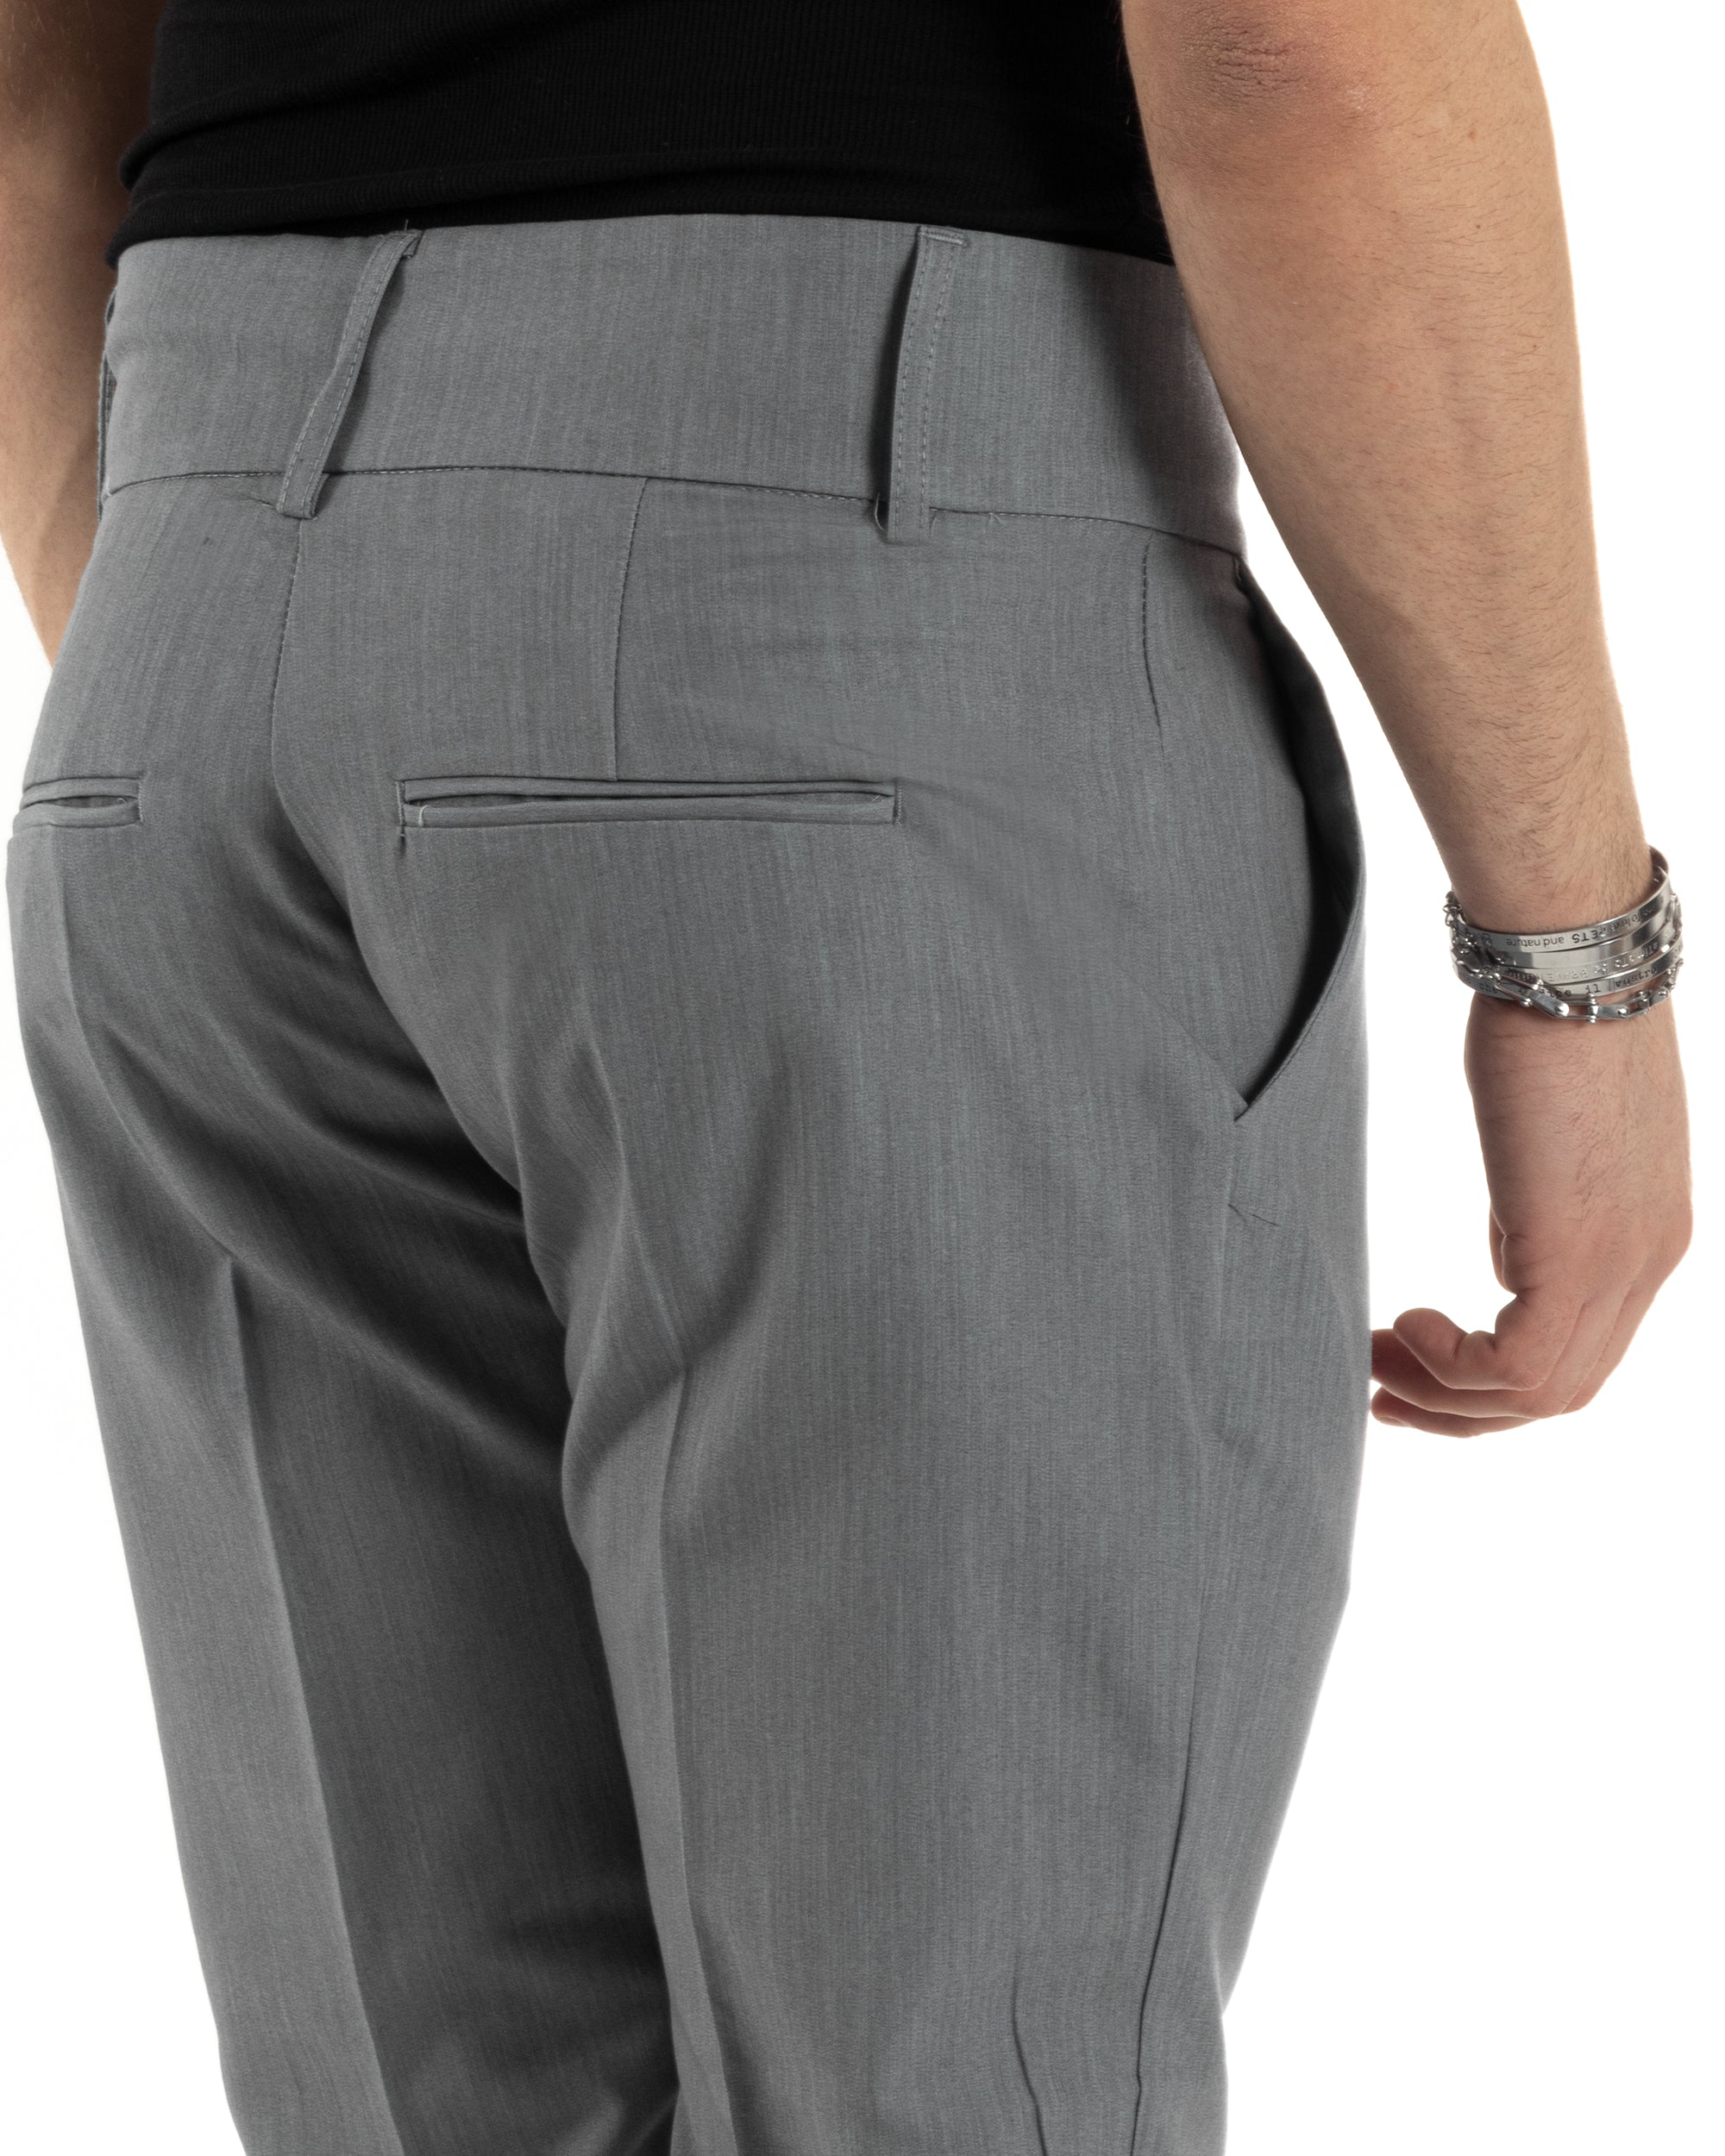 Pantaloni Uomo Viscosa Tasca America Vita Alta Classico Pinces Abbottonatura Allungata Casual Grigio GIOSAL-P6016A